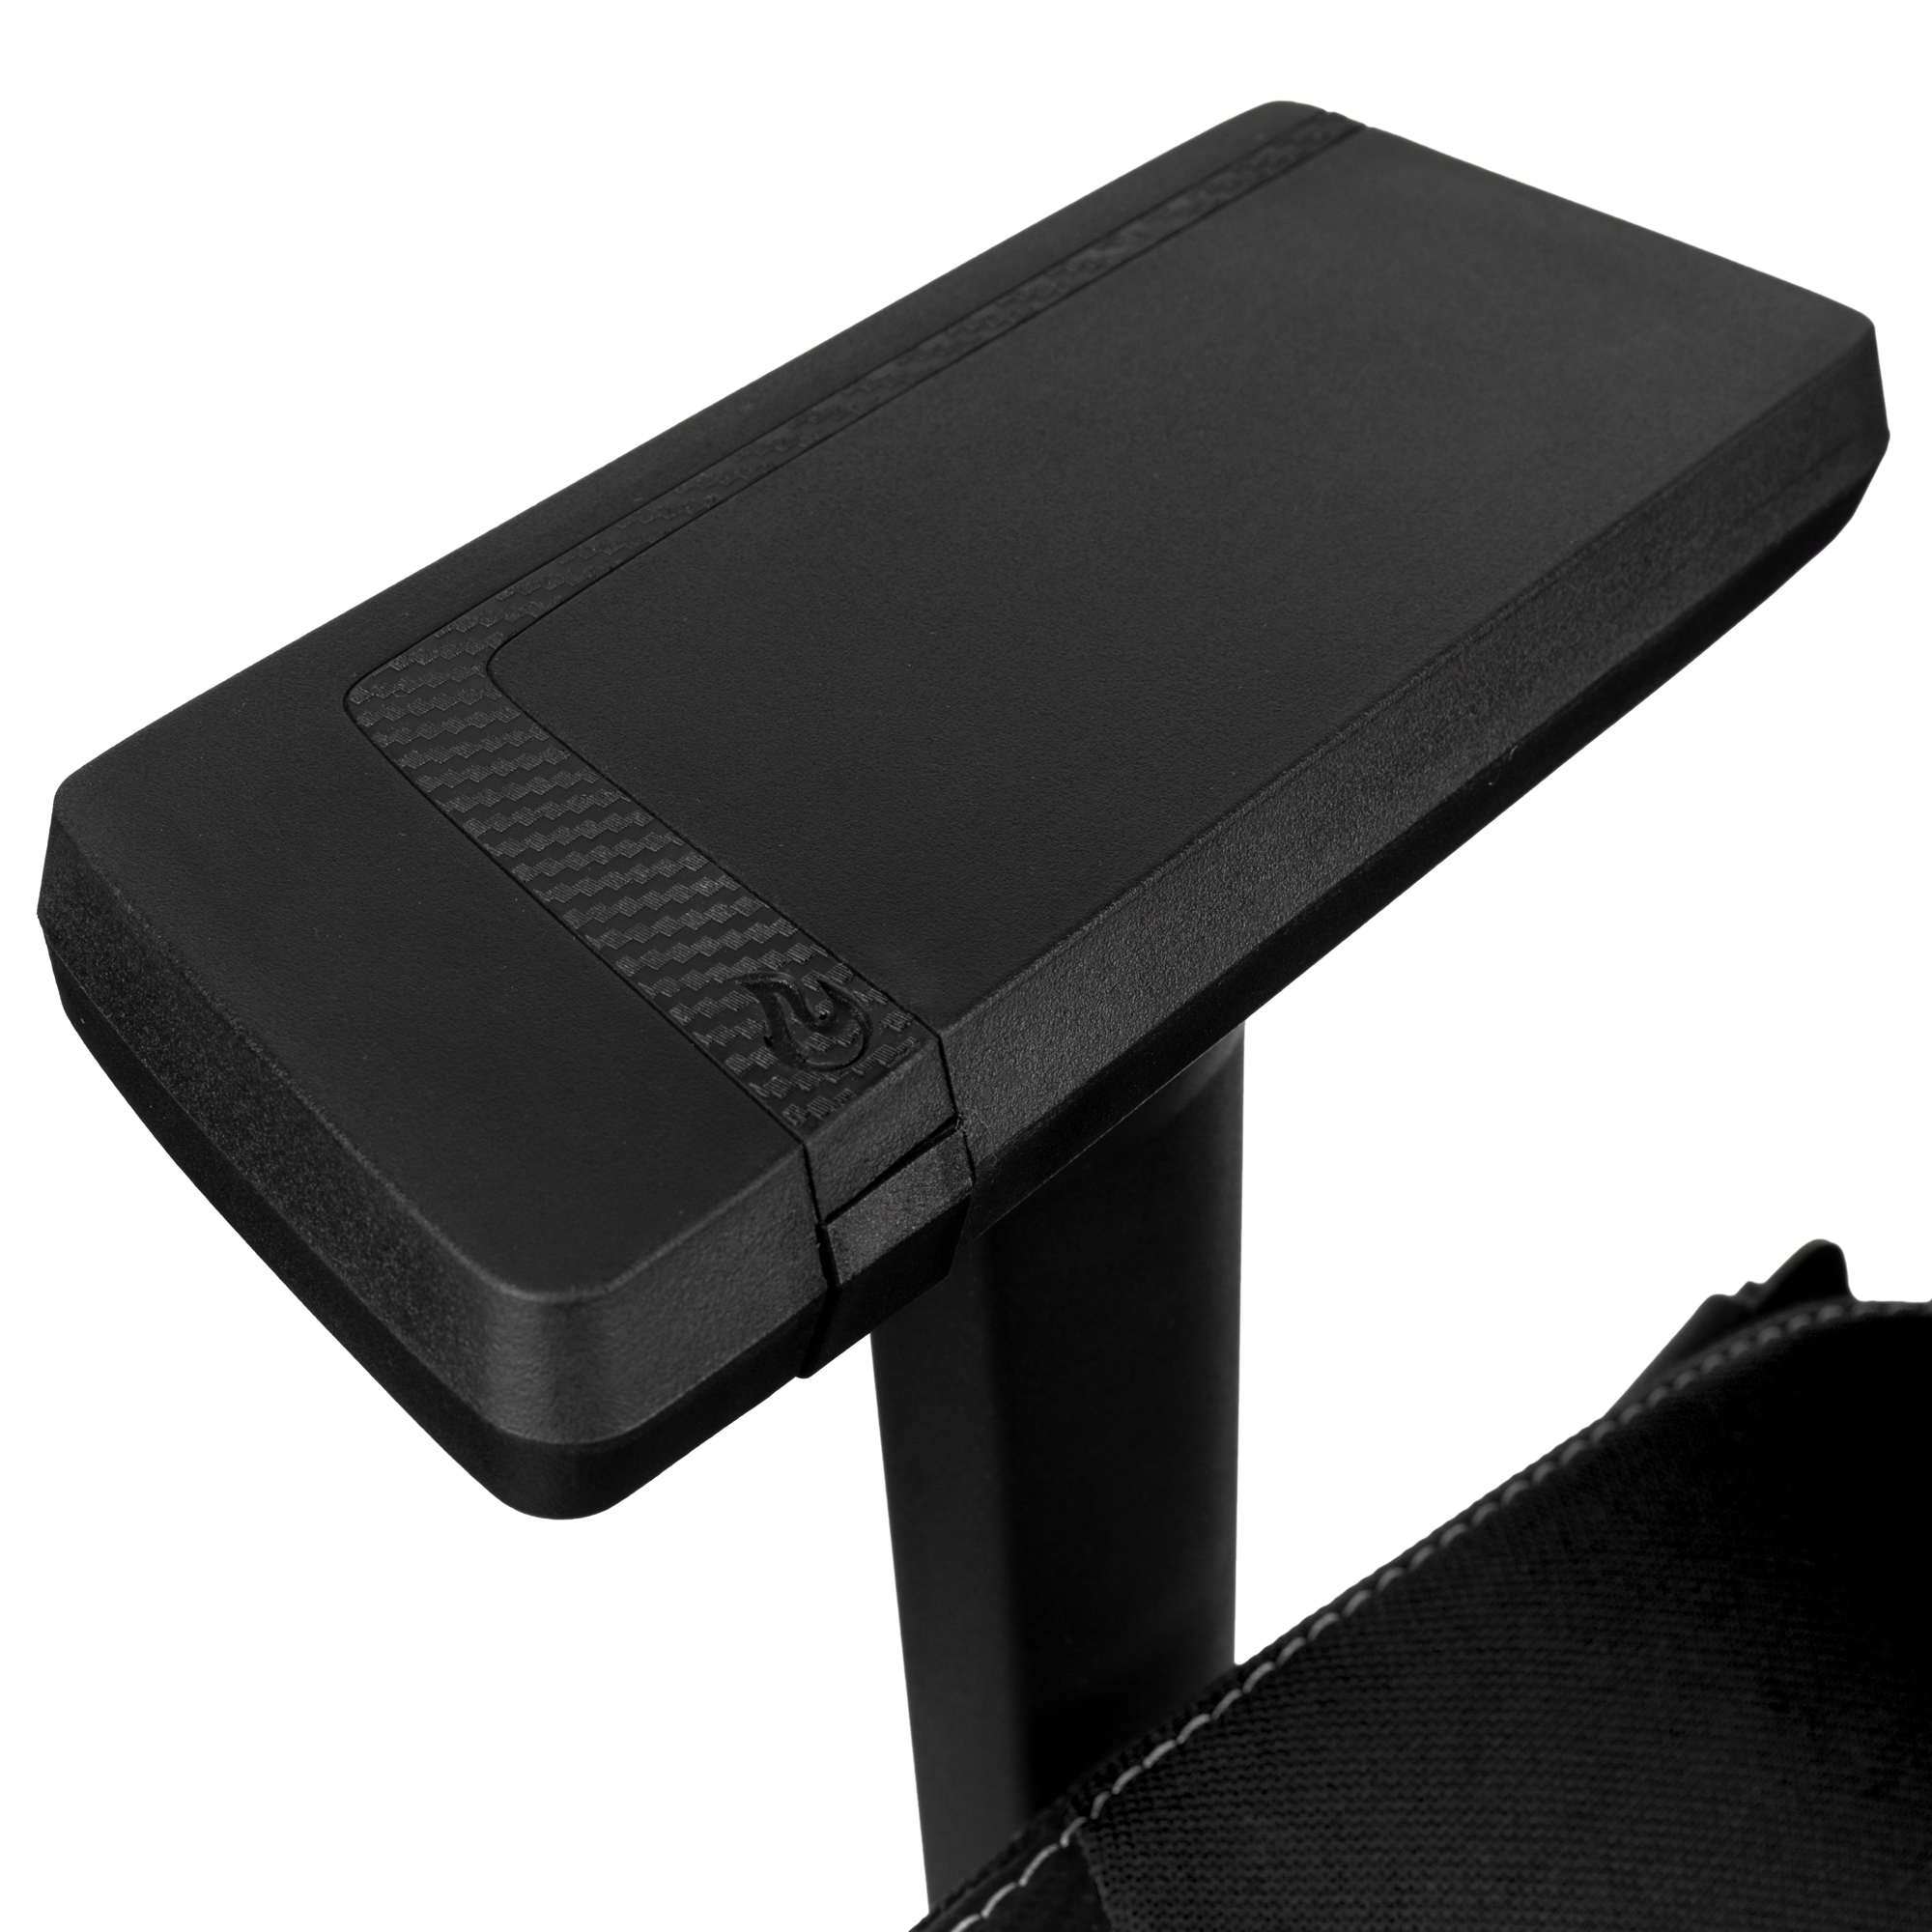 Nitro Concepts - Cadeira de Gaming X1000 Preto